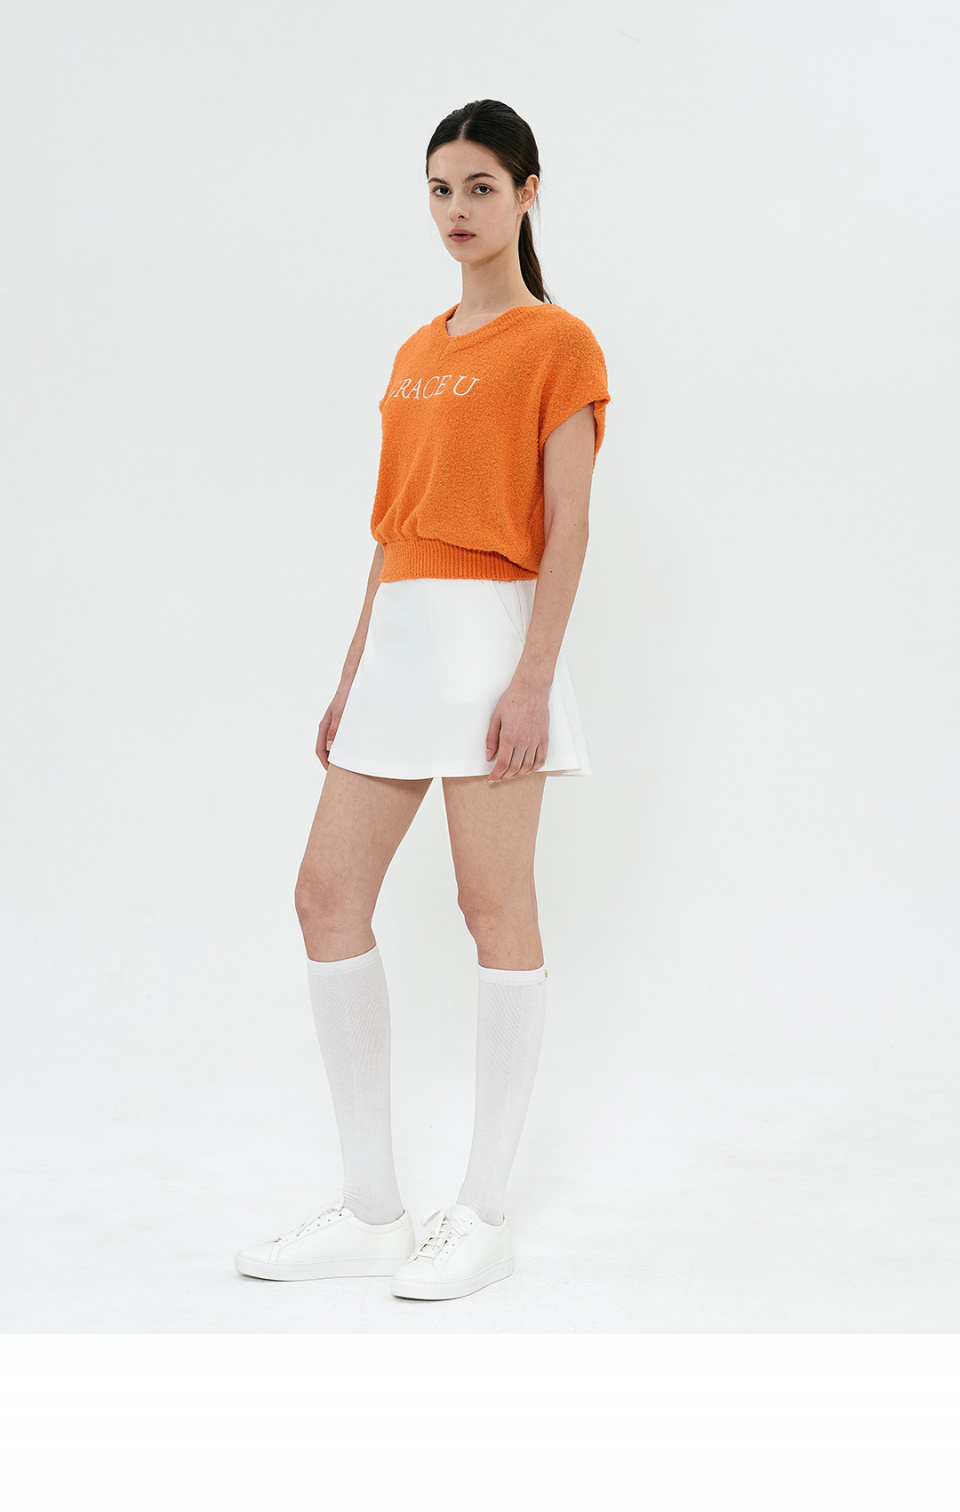 그레이스유(GRACE U) Poppy Knit Vest (Orange)